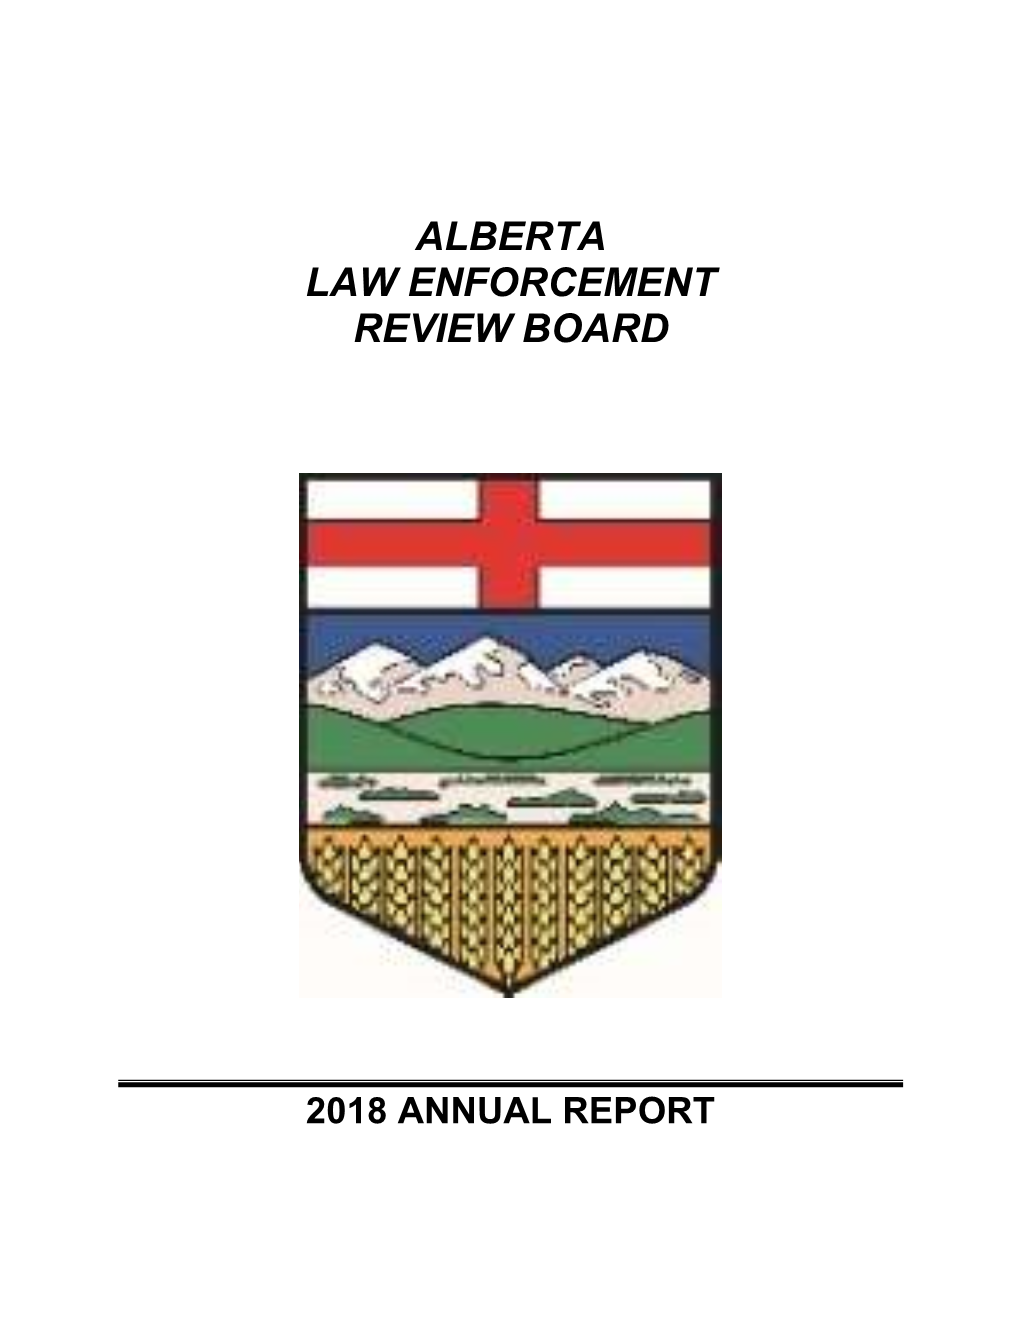 Alberta Law Enforcement Review Board